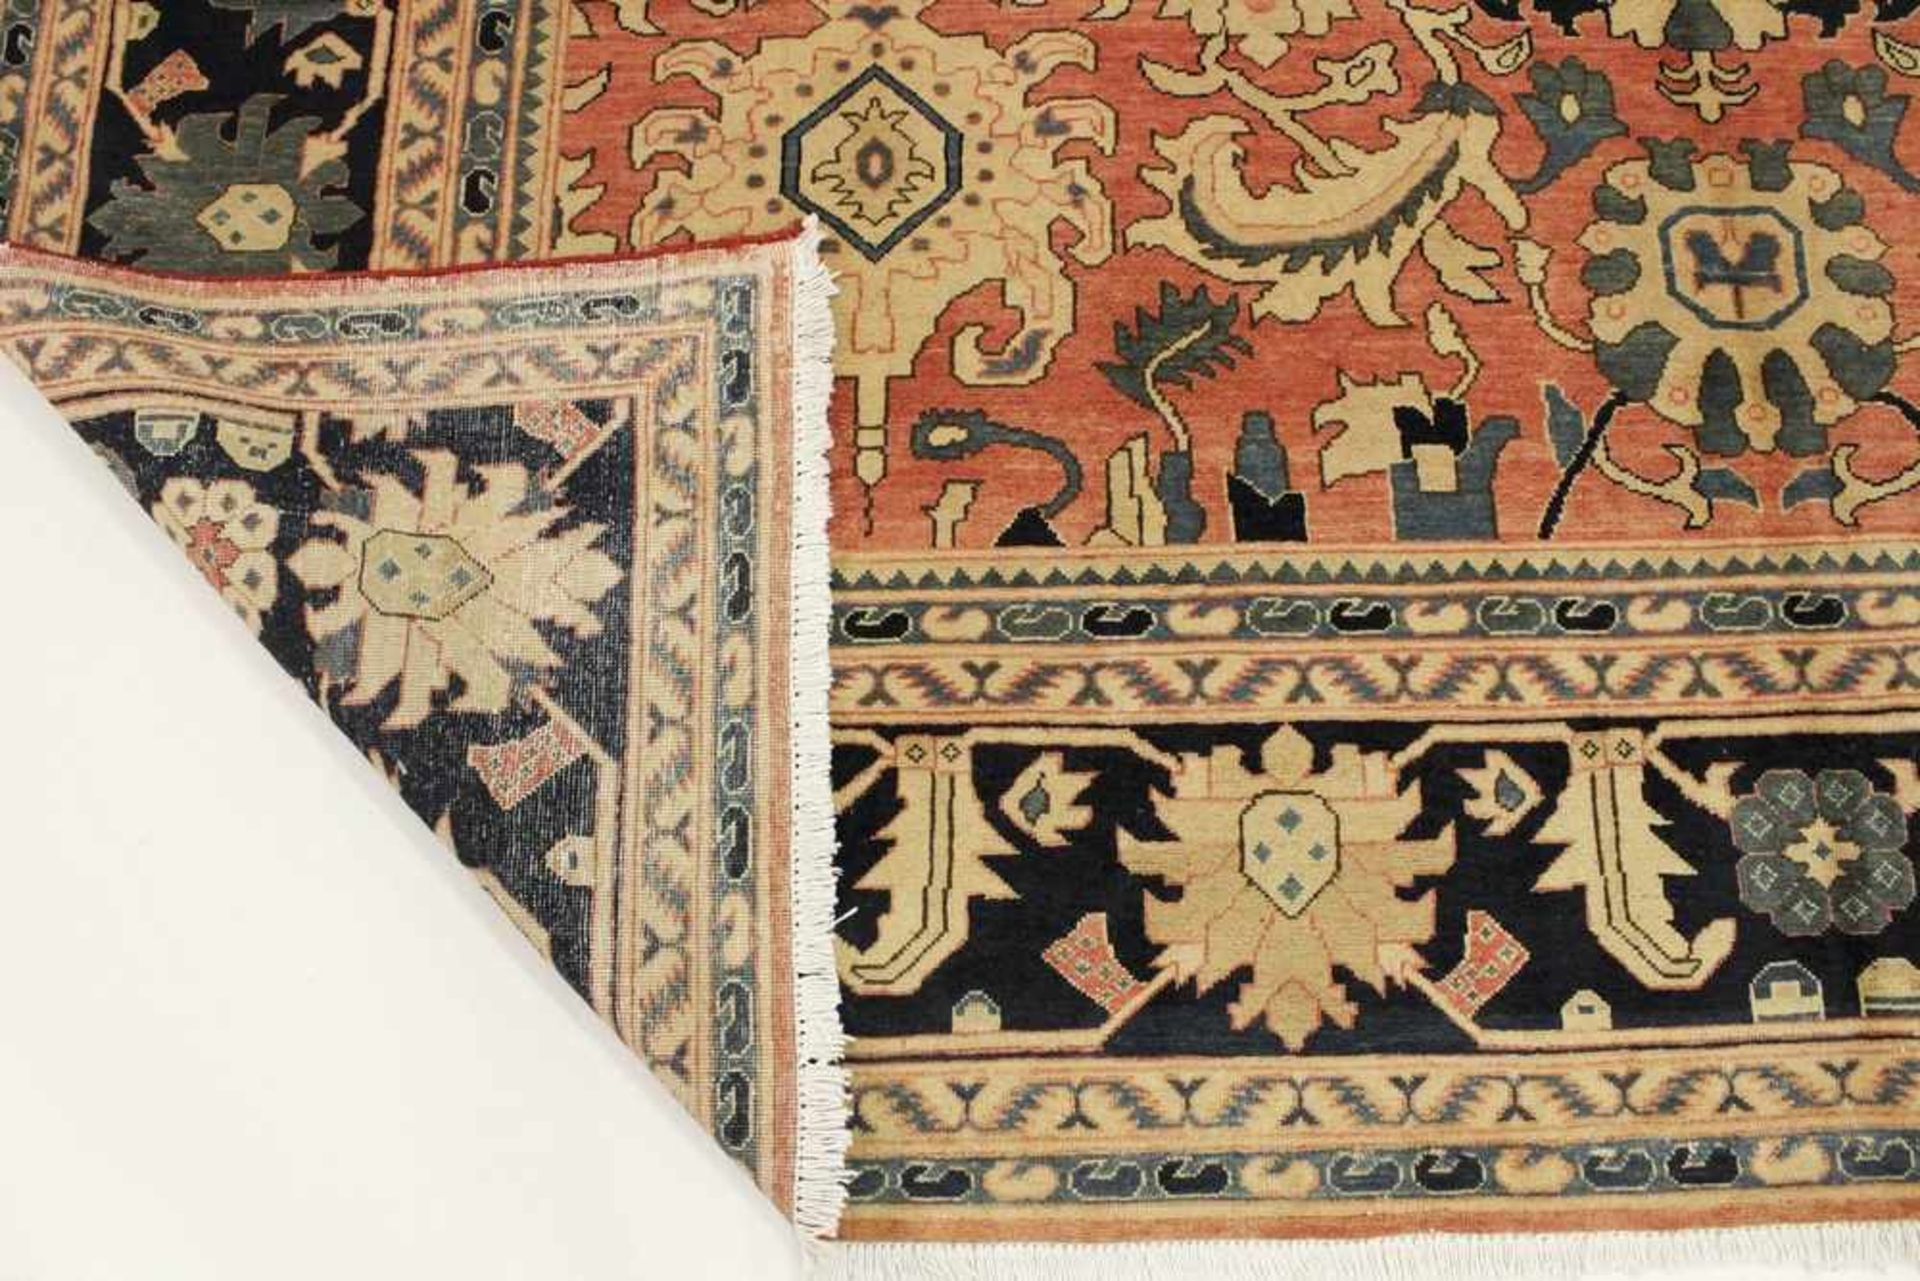 Großer Azeri Teppich mit floral abstrahiertem Muster auf apricotfarbenem Fond, Pflanzenfarben, - Bild 2 aus 2